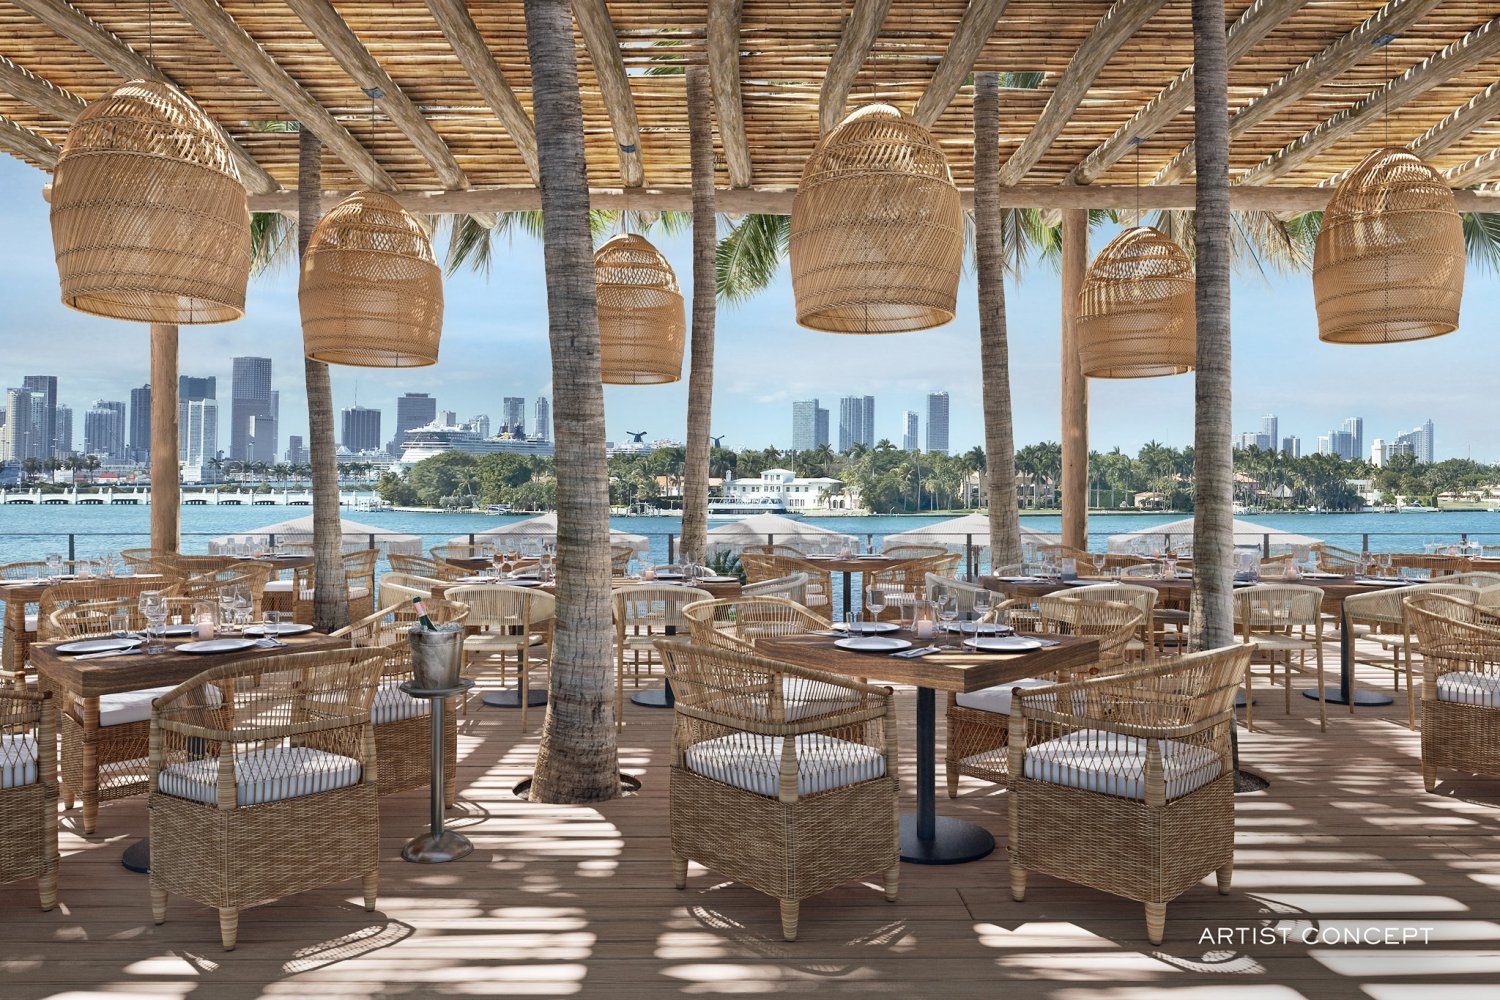 Restaurantes con música en vivo en Miami